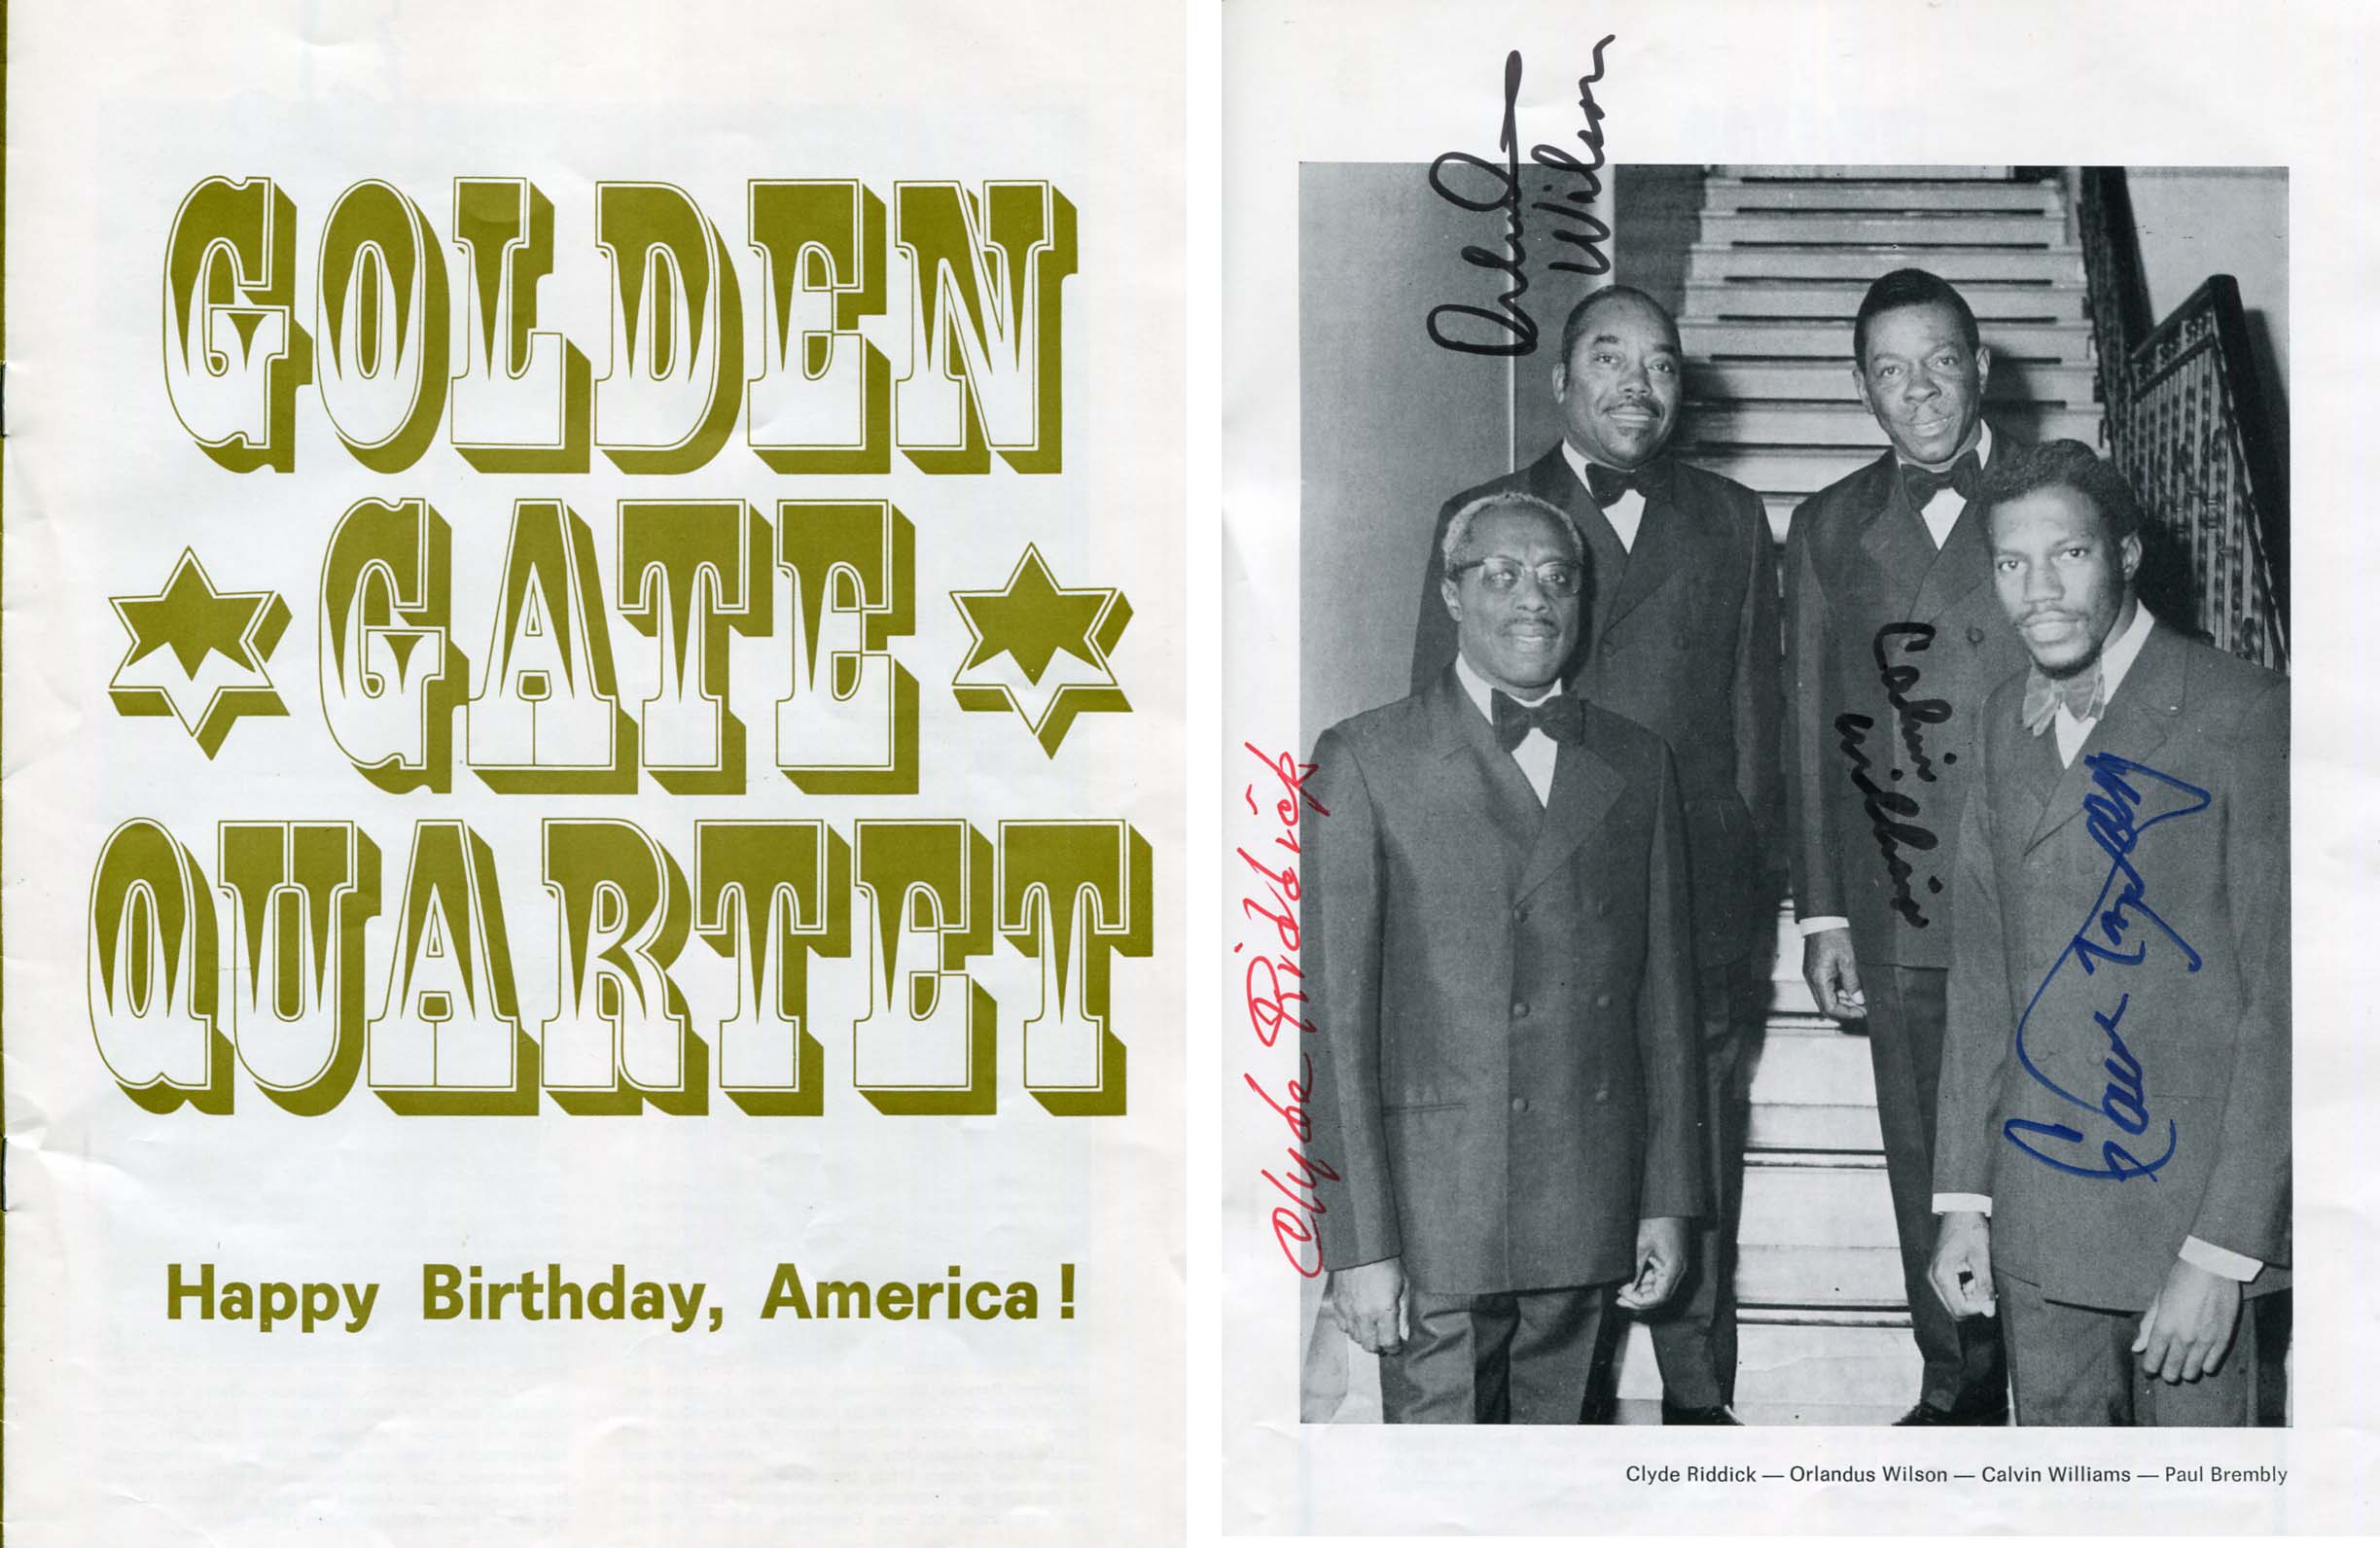  Golden Gate Quartet Autograph Autogramm | ID 7865000591509